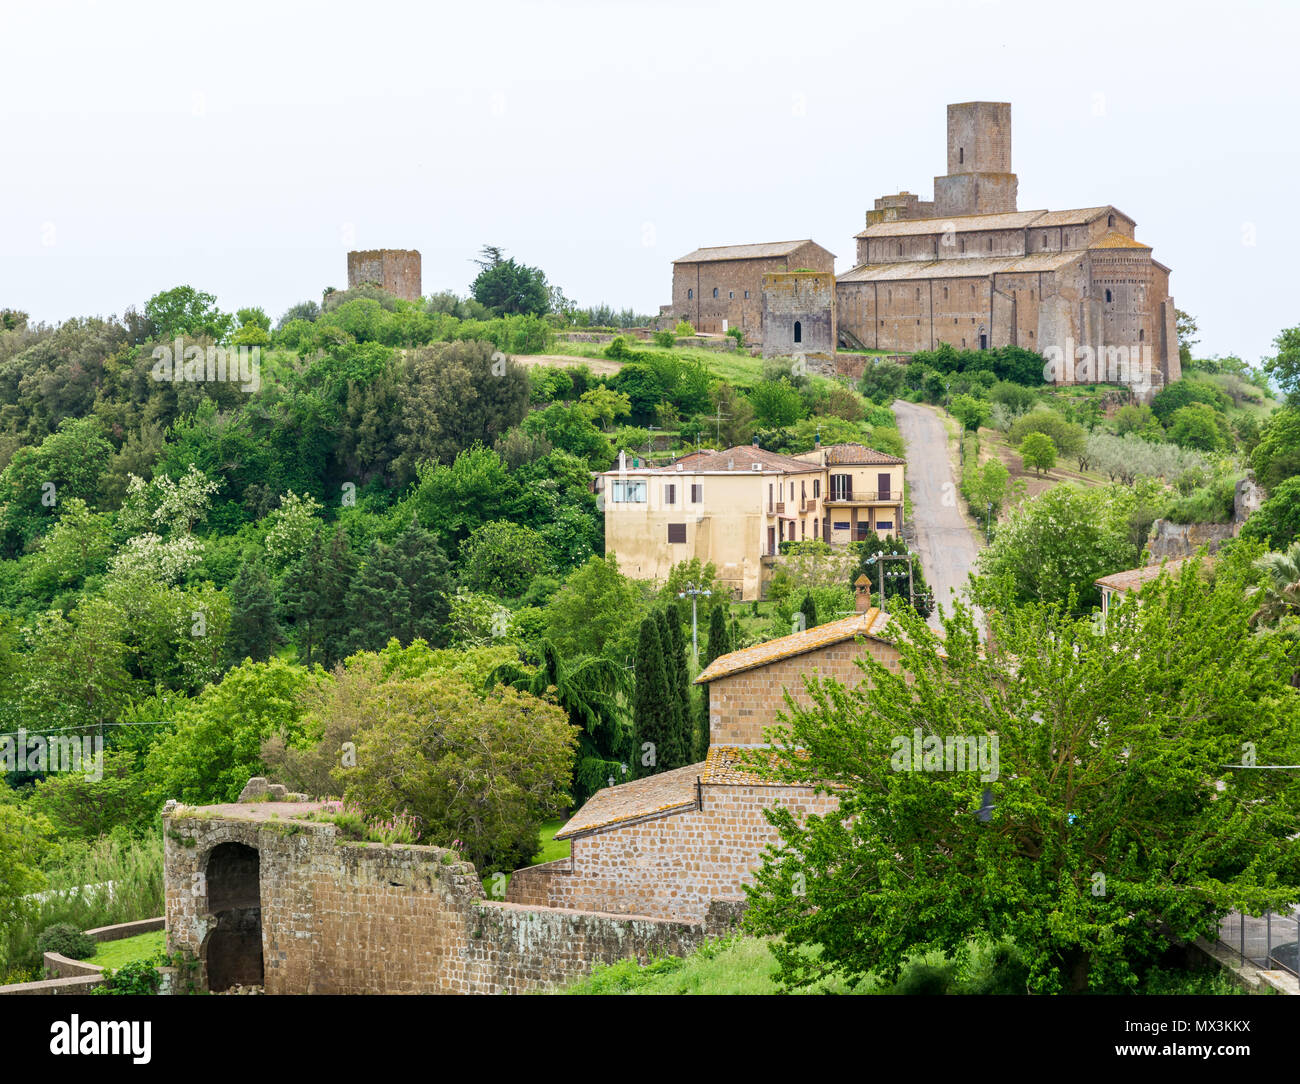 Tuscania (Italia) - un espléndido etrusca y ciudad medieval en la provincia de Viterbo, Tuscia, región de Lazio. Es una atracción turística por sus numerosas iglesias. Foto de stock